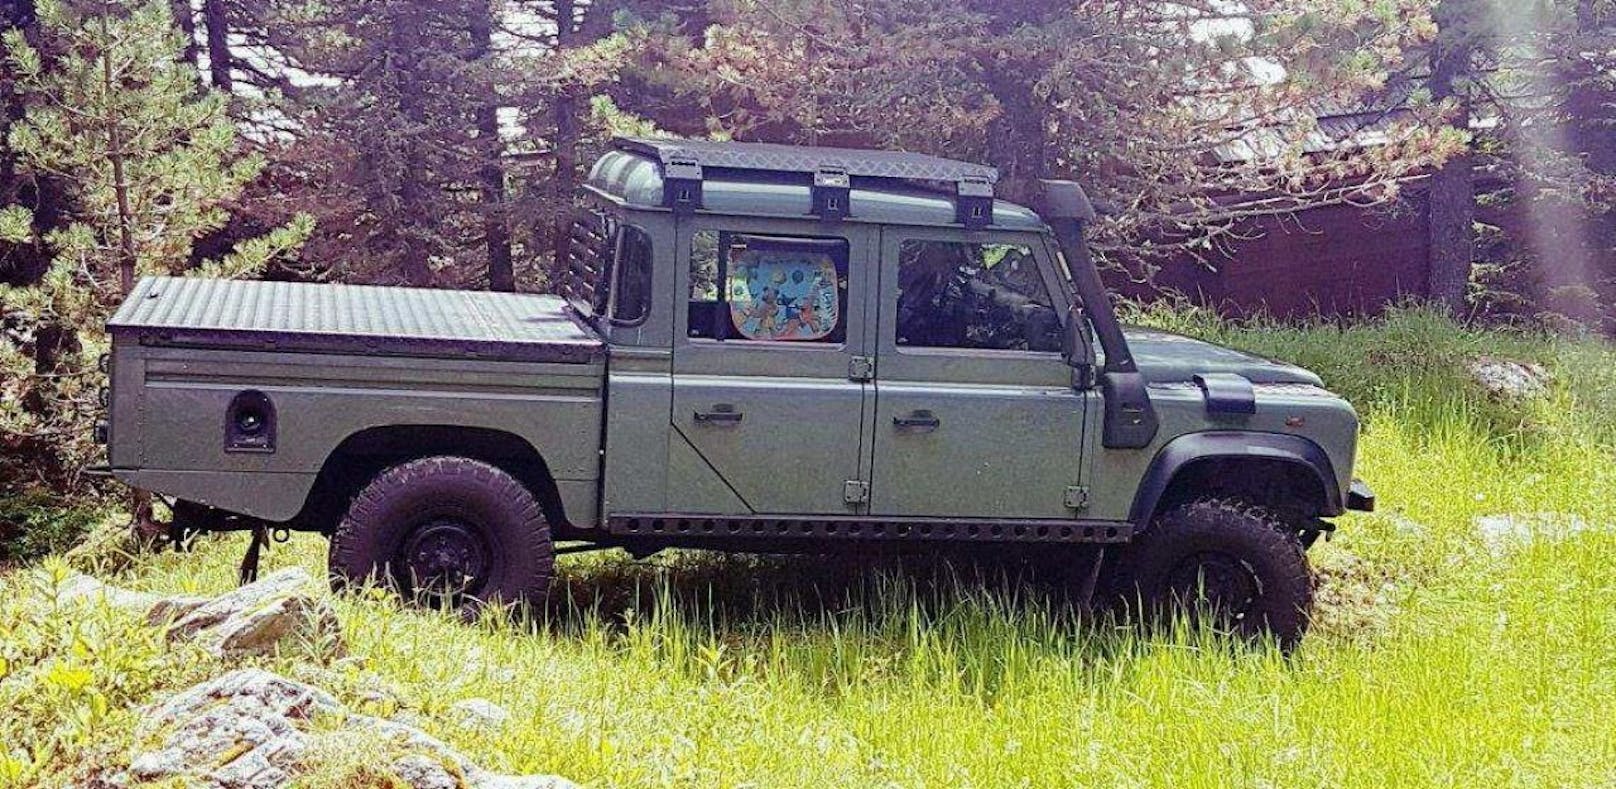 Dieses gestohlene Fahrzeug vom Typ Marke Land Rover Defender Pick Up wird dringend gesucht.